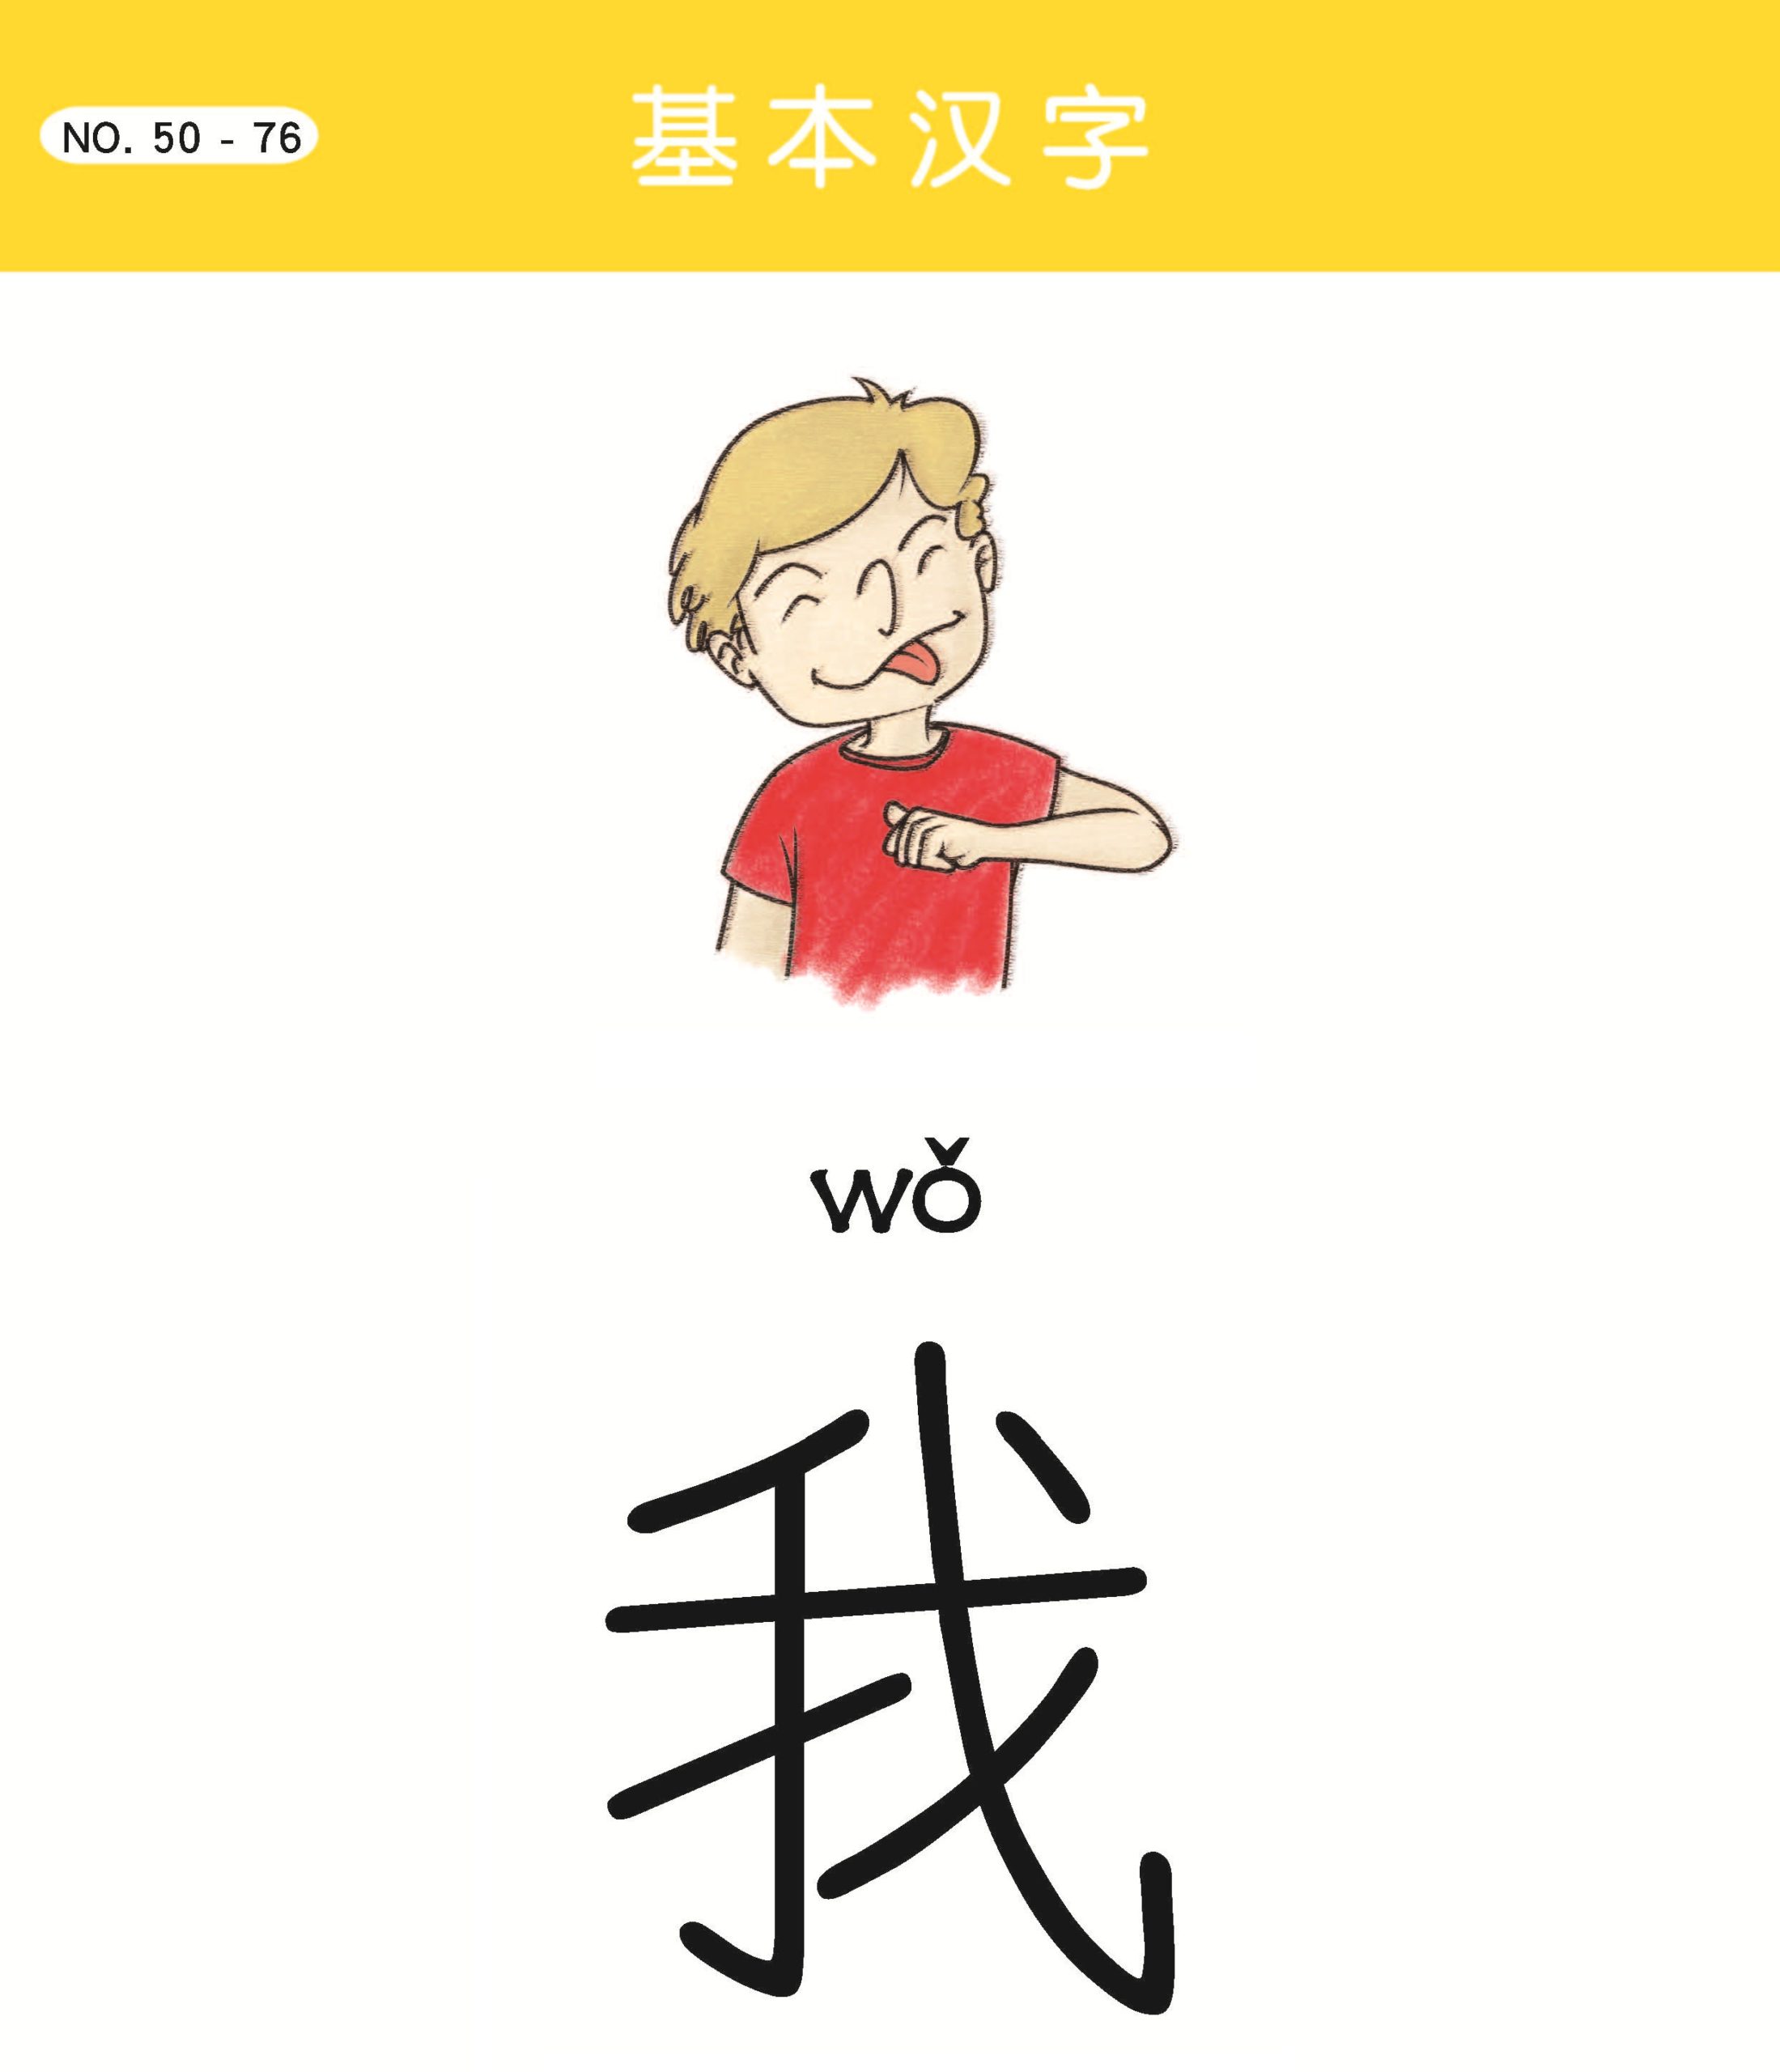 To Speak, Read, and Write Chinese – Beijing Mandarin